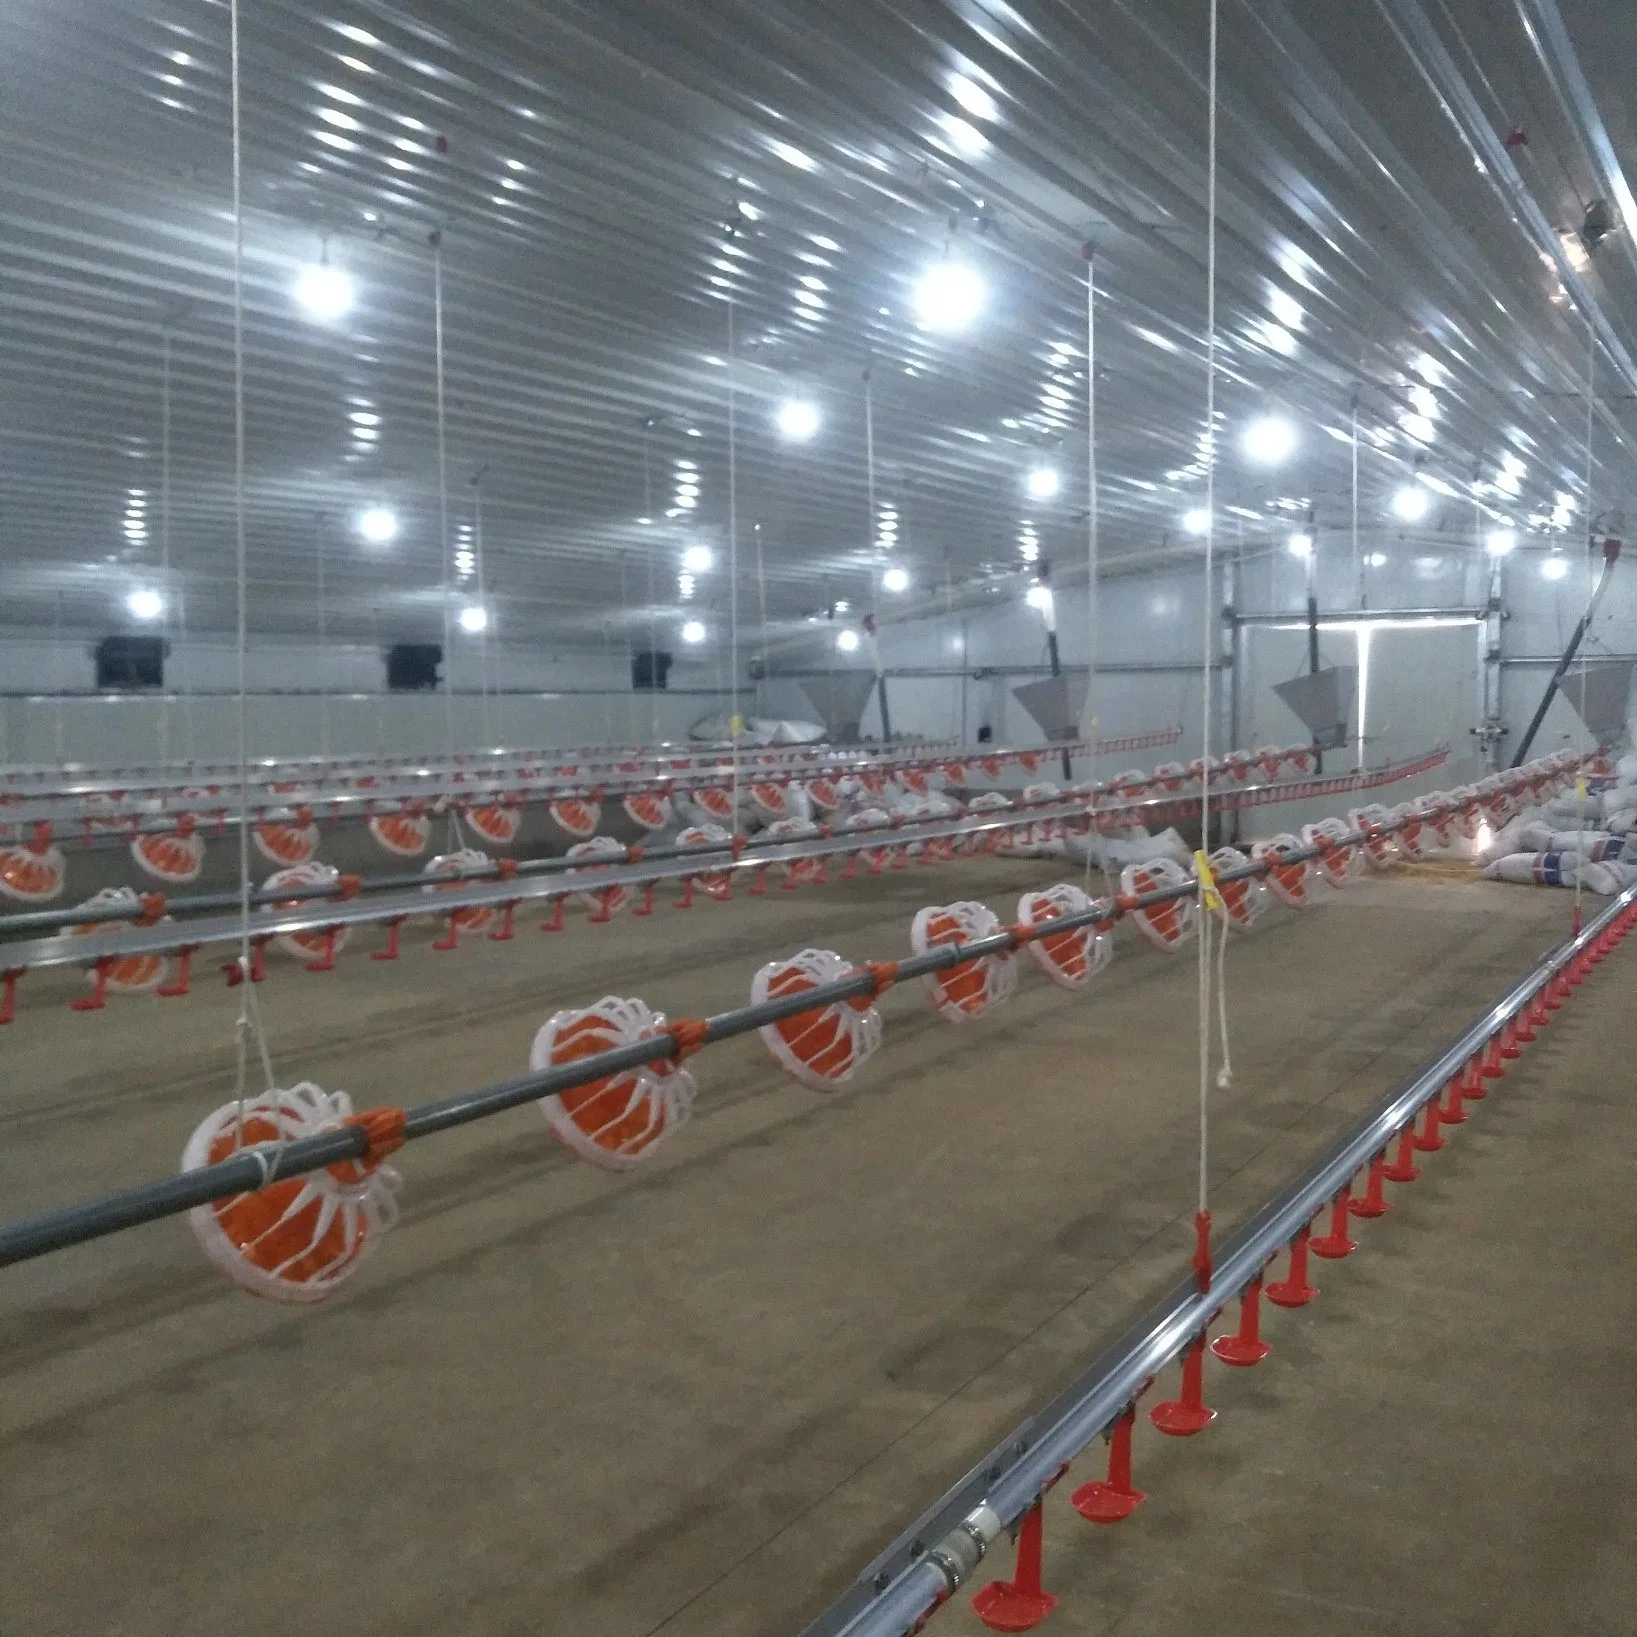 Sistema automático de la cría de pollos Equipo para avicultura Equipo para la granja avícola